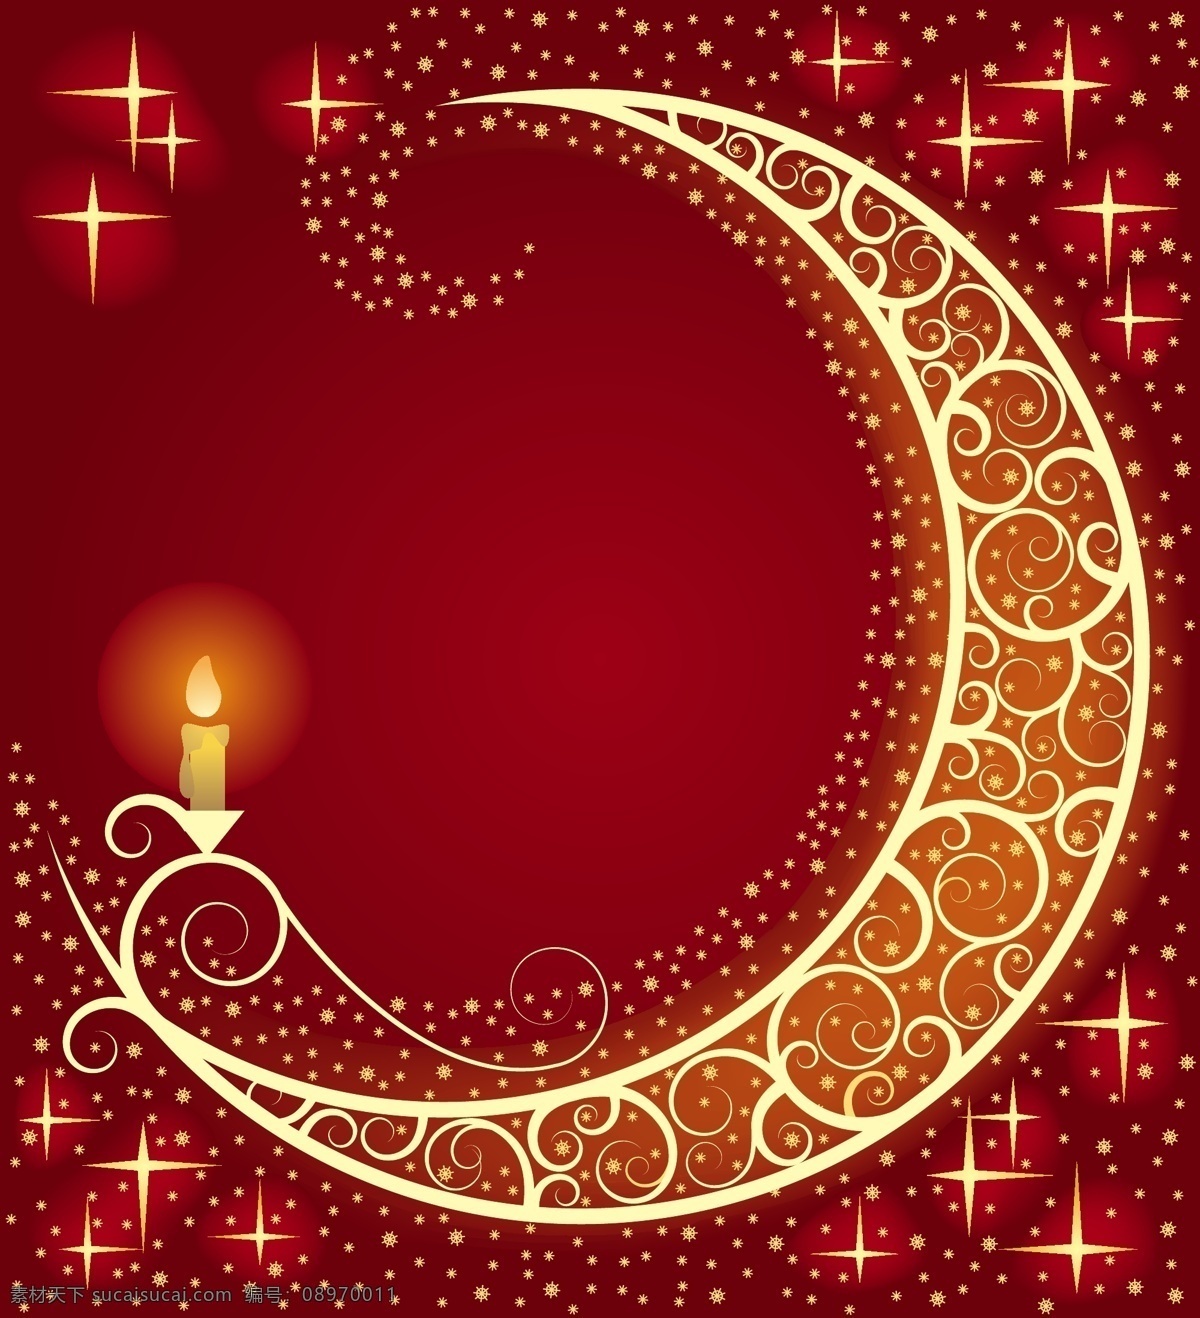 蜡烛免费下载 cdr矢量图 枫叶 火焰 蜡烛 闪闪发光 饰品 星星 月亮 其他矢量图